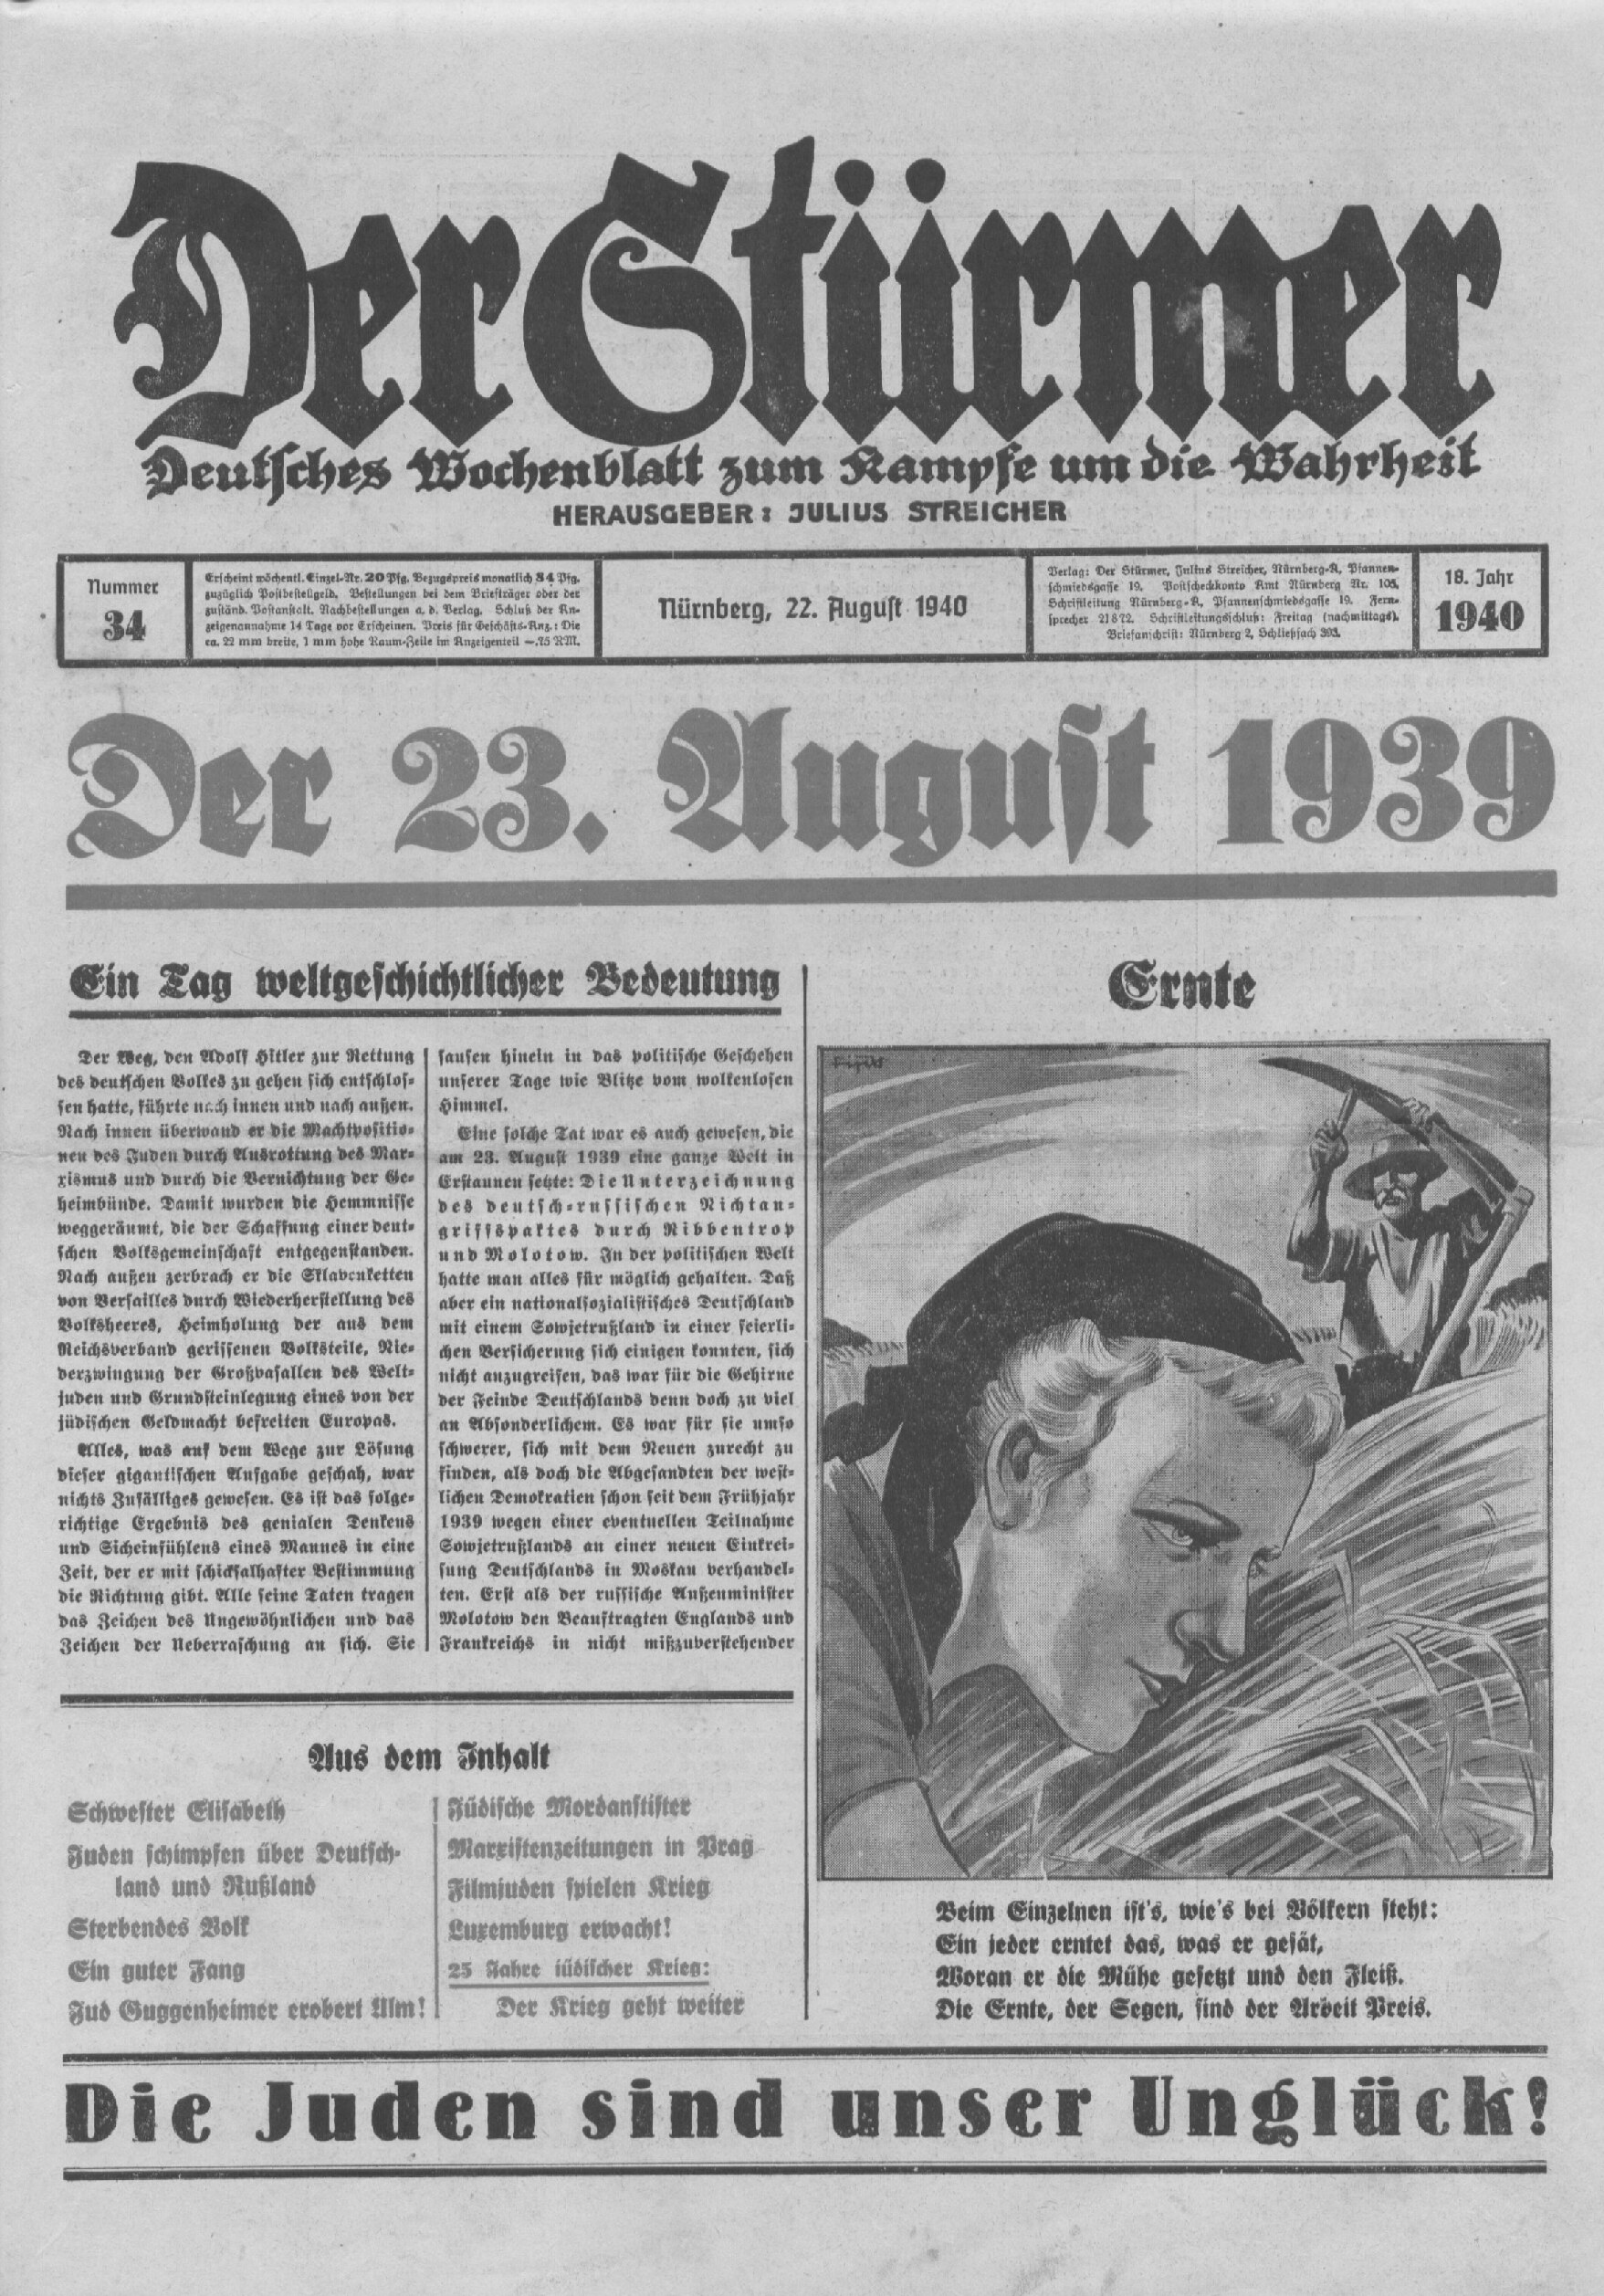 Der Stürmer - 1940 Nr. 34 - Der 23. August 1939